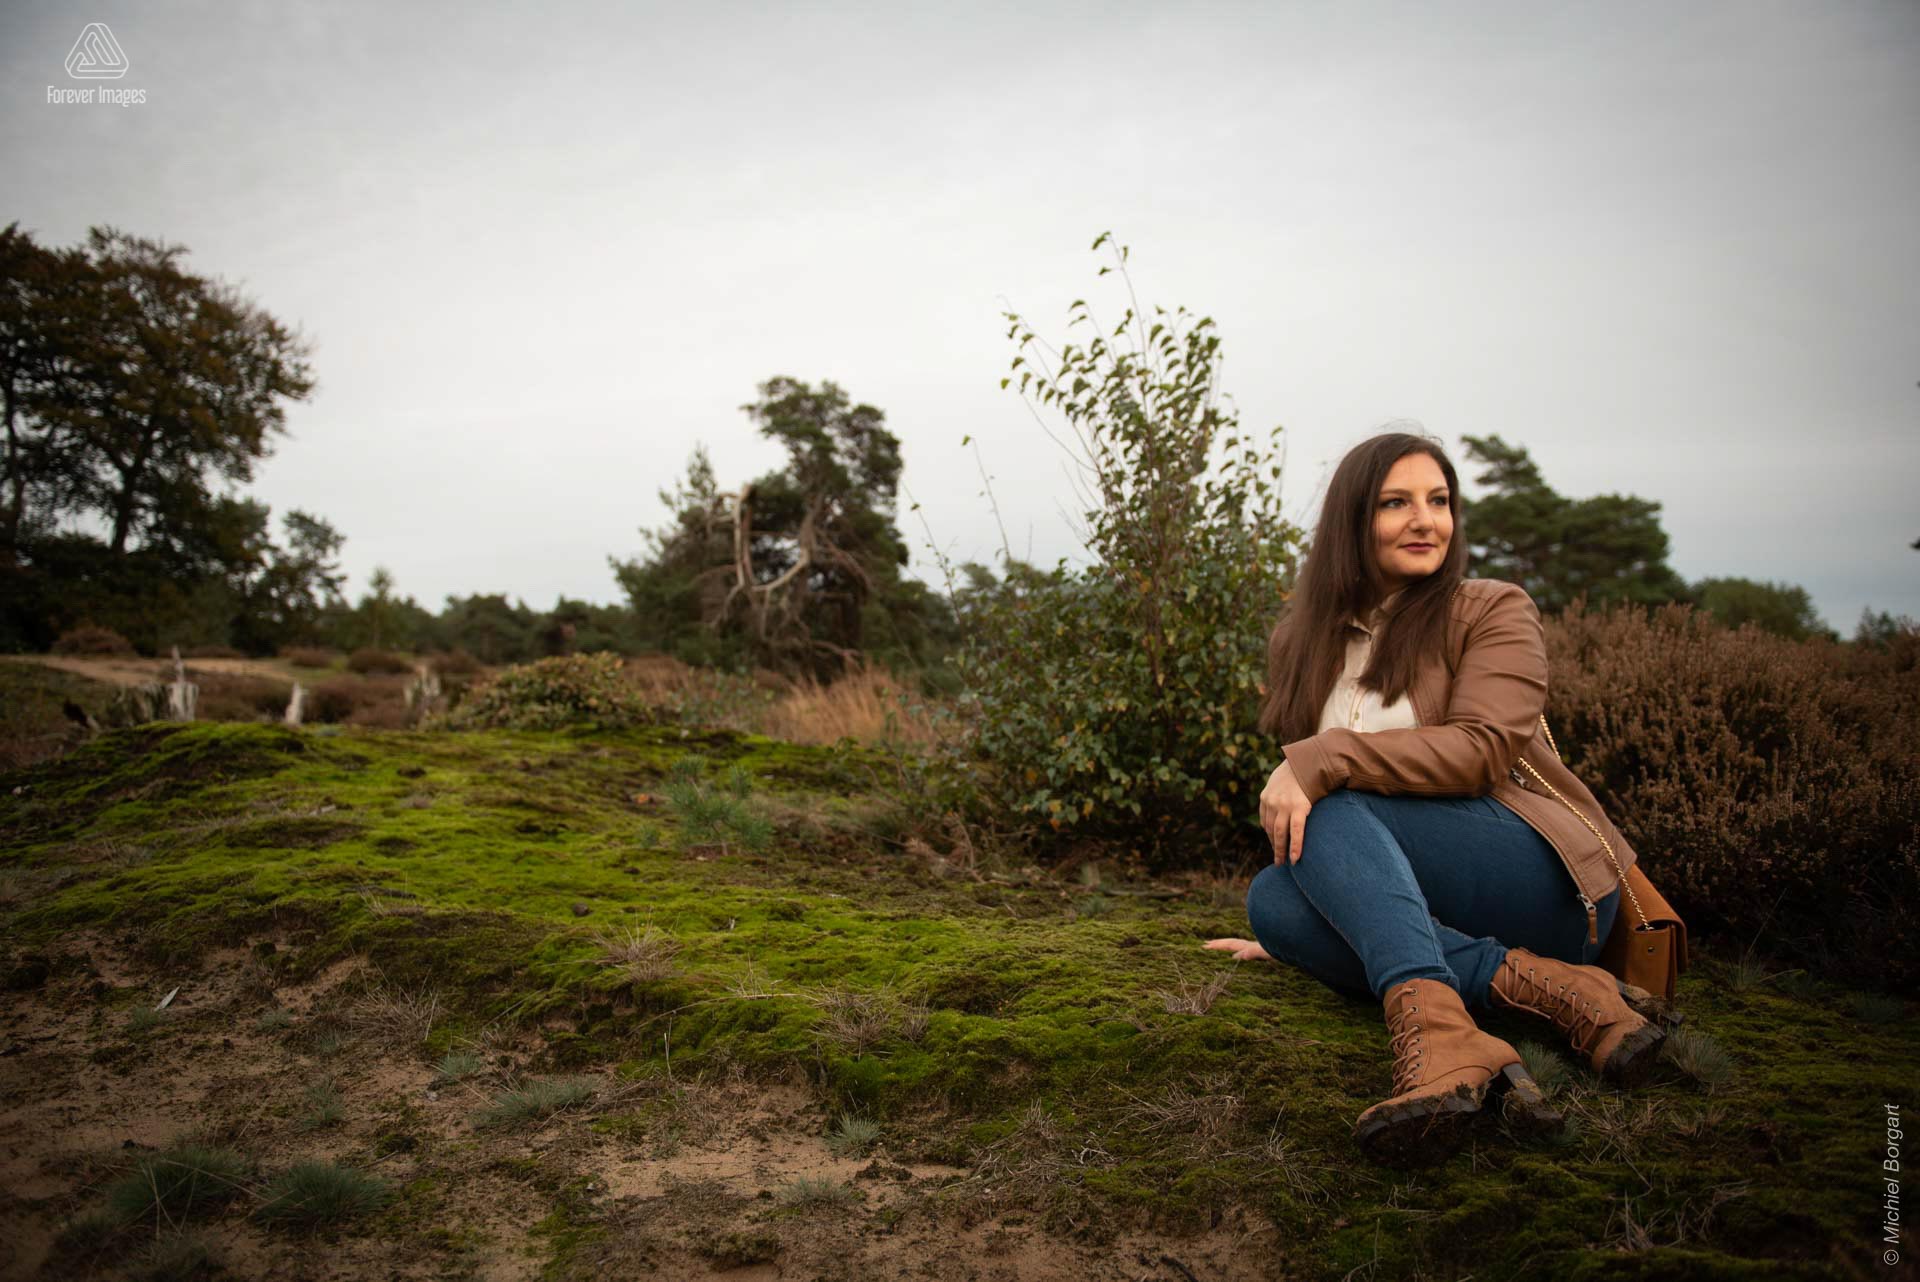 Portretfoto dame zittend op mos | Stefania Piazza Veluwezoom | Portretfotograaf Michiel Borgart - Forever Images.